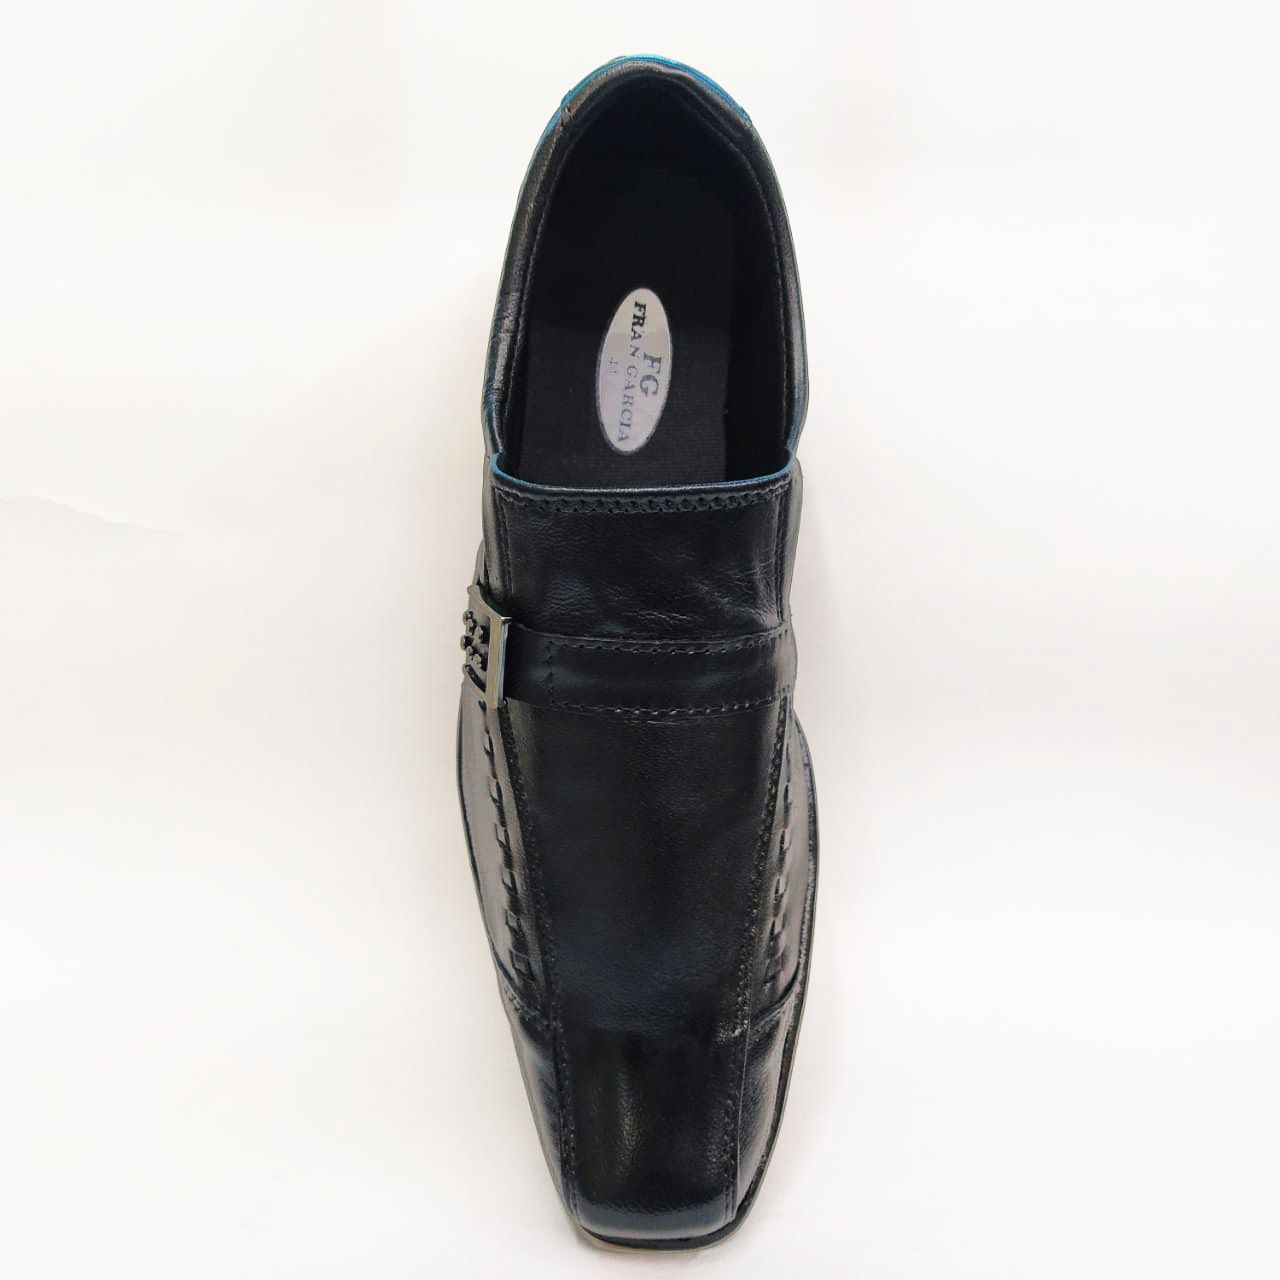 Sapato social especial em couro Frangarcia 573 - Preto